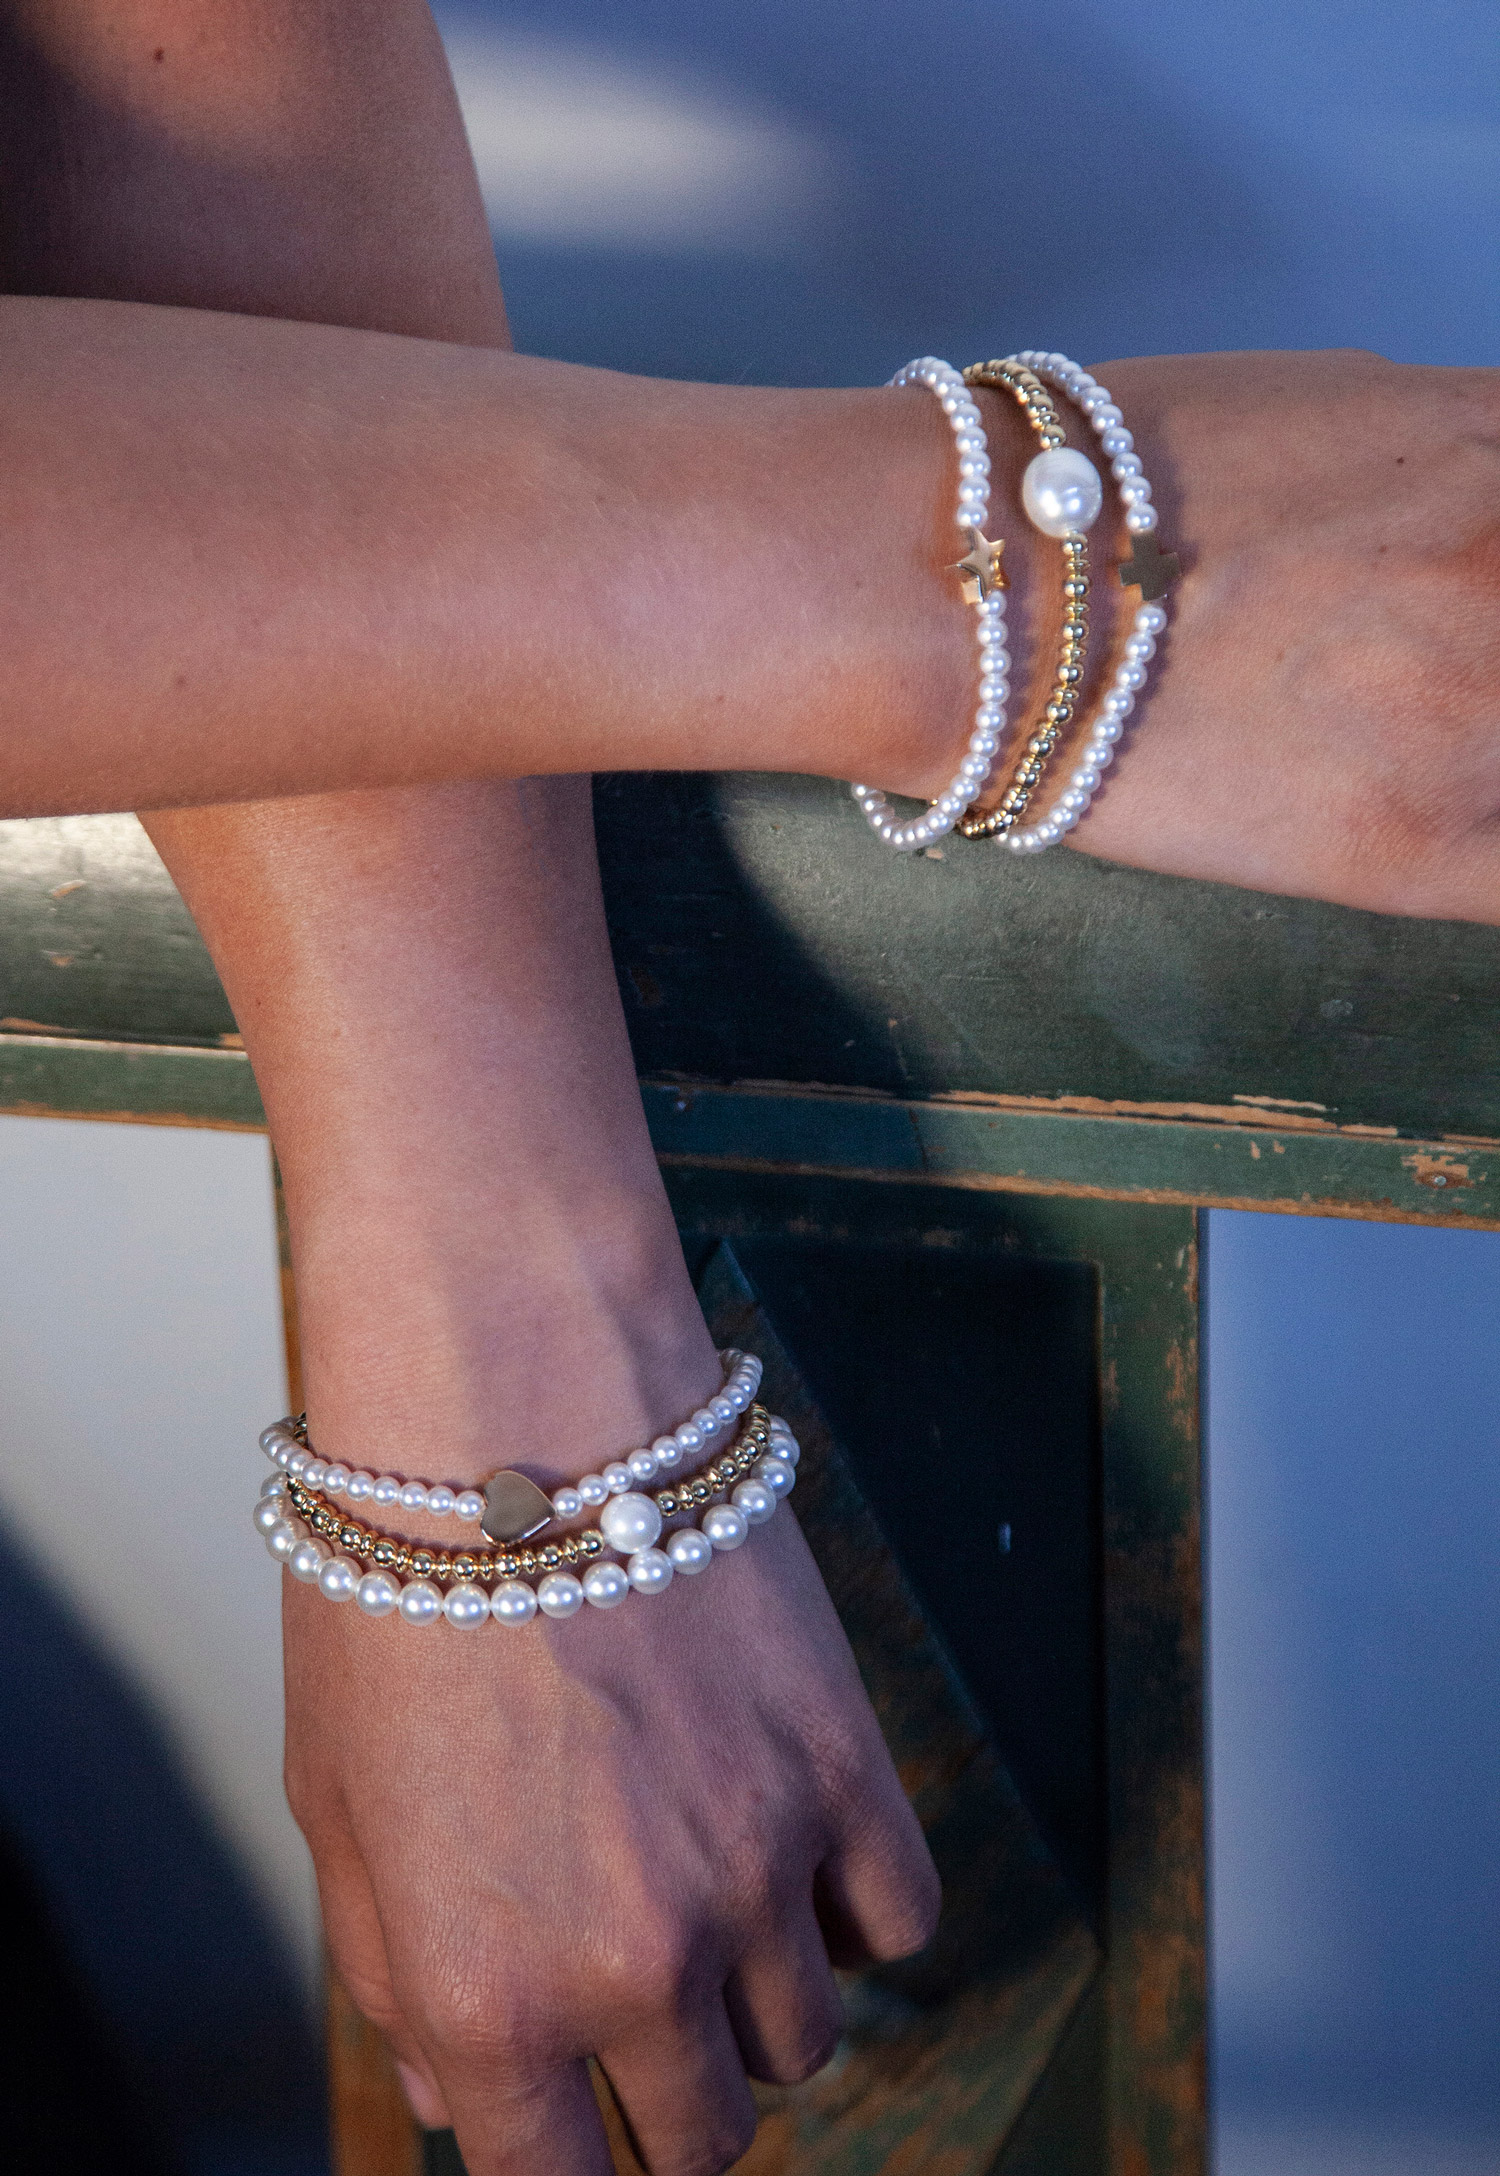 Bracelet à fermoir laiton doré en perles de Majorque blanches